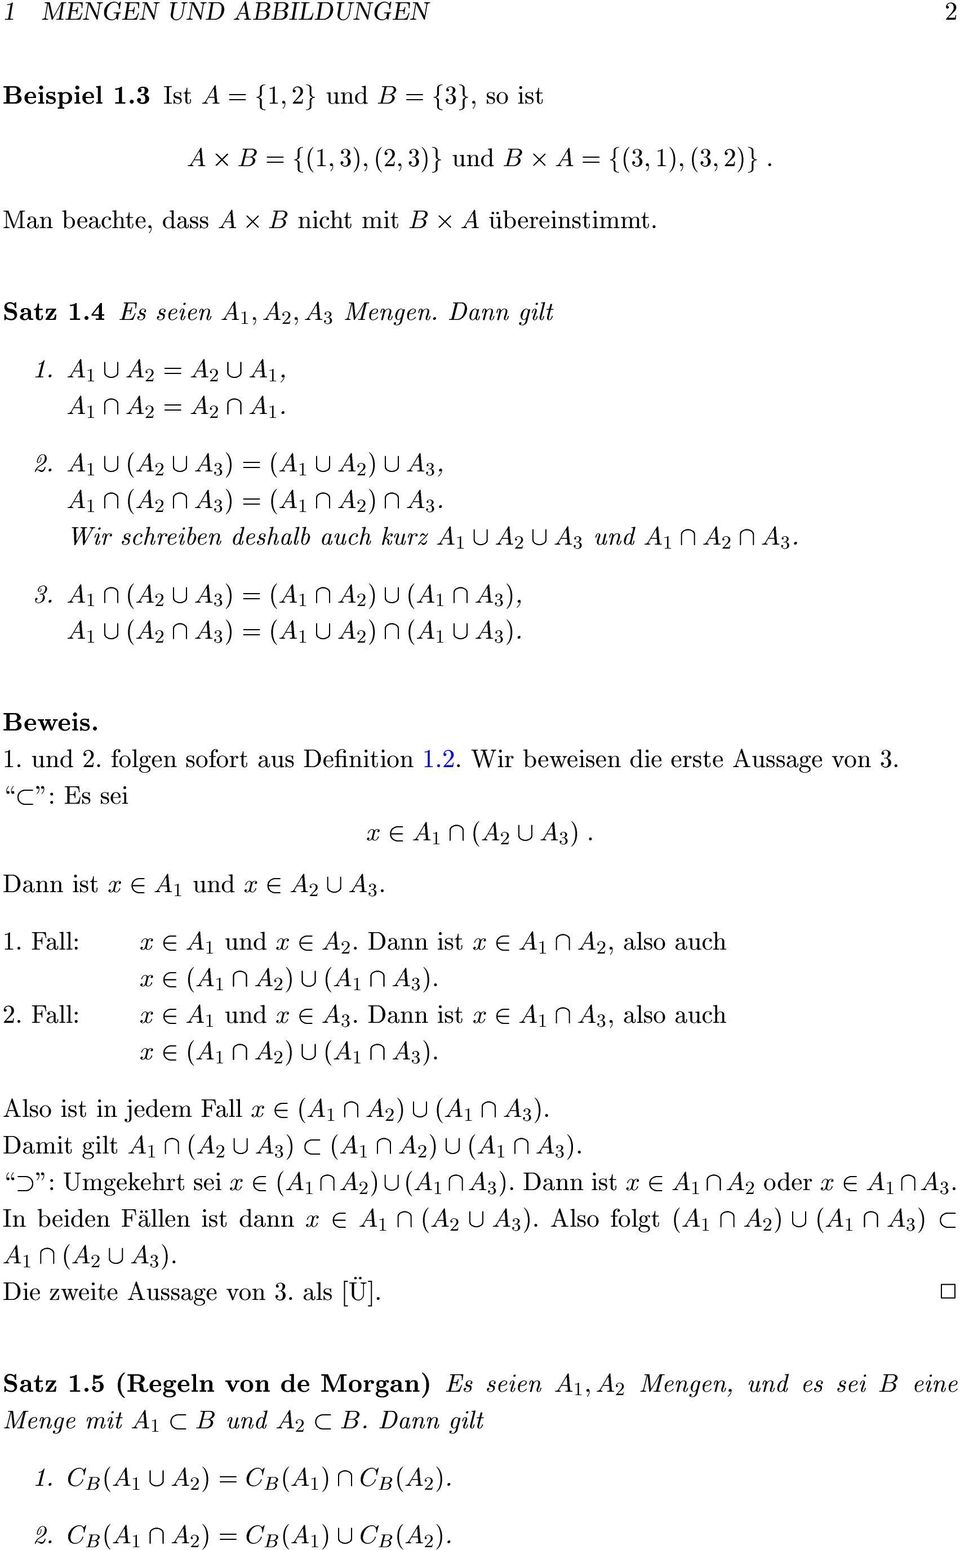 3. A \ (A [ A 3 ) = (A \ A ) [ (A \ A 3 ), A [ (A \ A 3 ) = (A [ A ) \ (A [ A 3 ). Beweis.. und. folgen sofort aus Denition.. Wir beweisen die erste Aussage von 3.